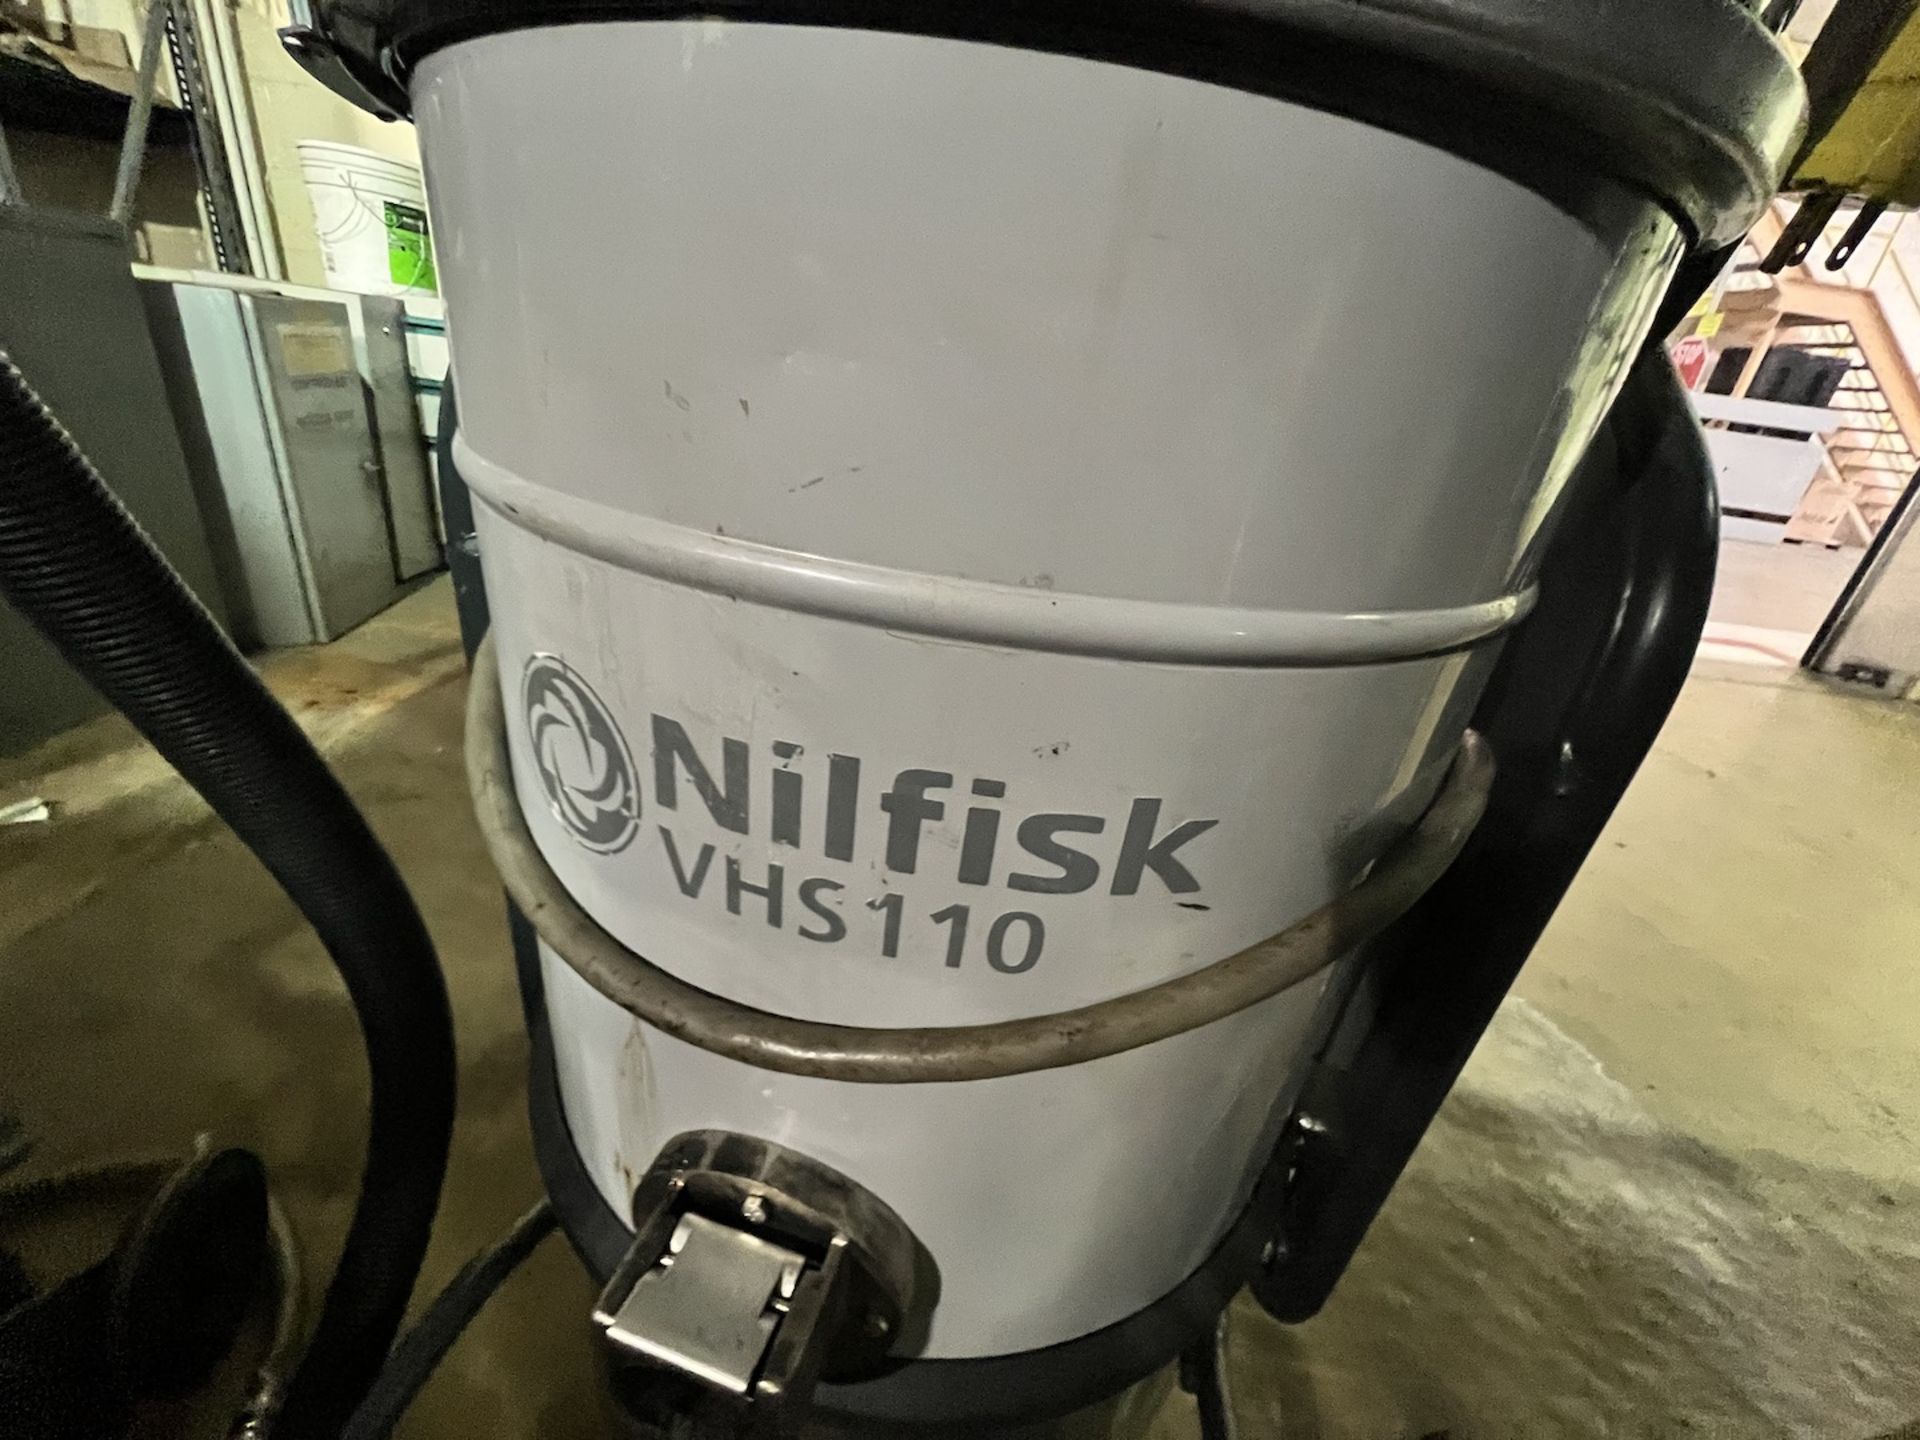 NILFISK EXPLOSION PROOF INDUSTRIAL VACUUM, MODEL VHS110, S/N 3820174800451 - Image 3 of 8